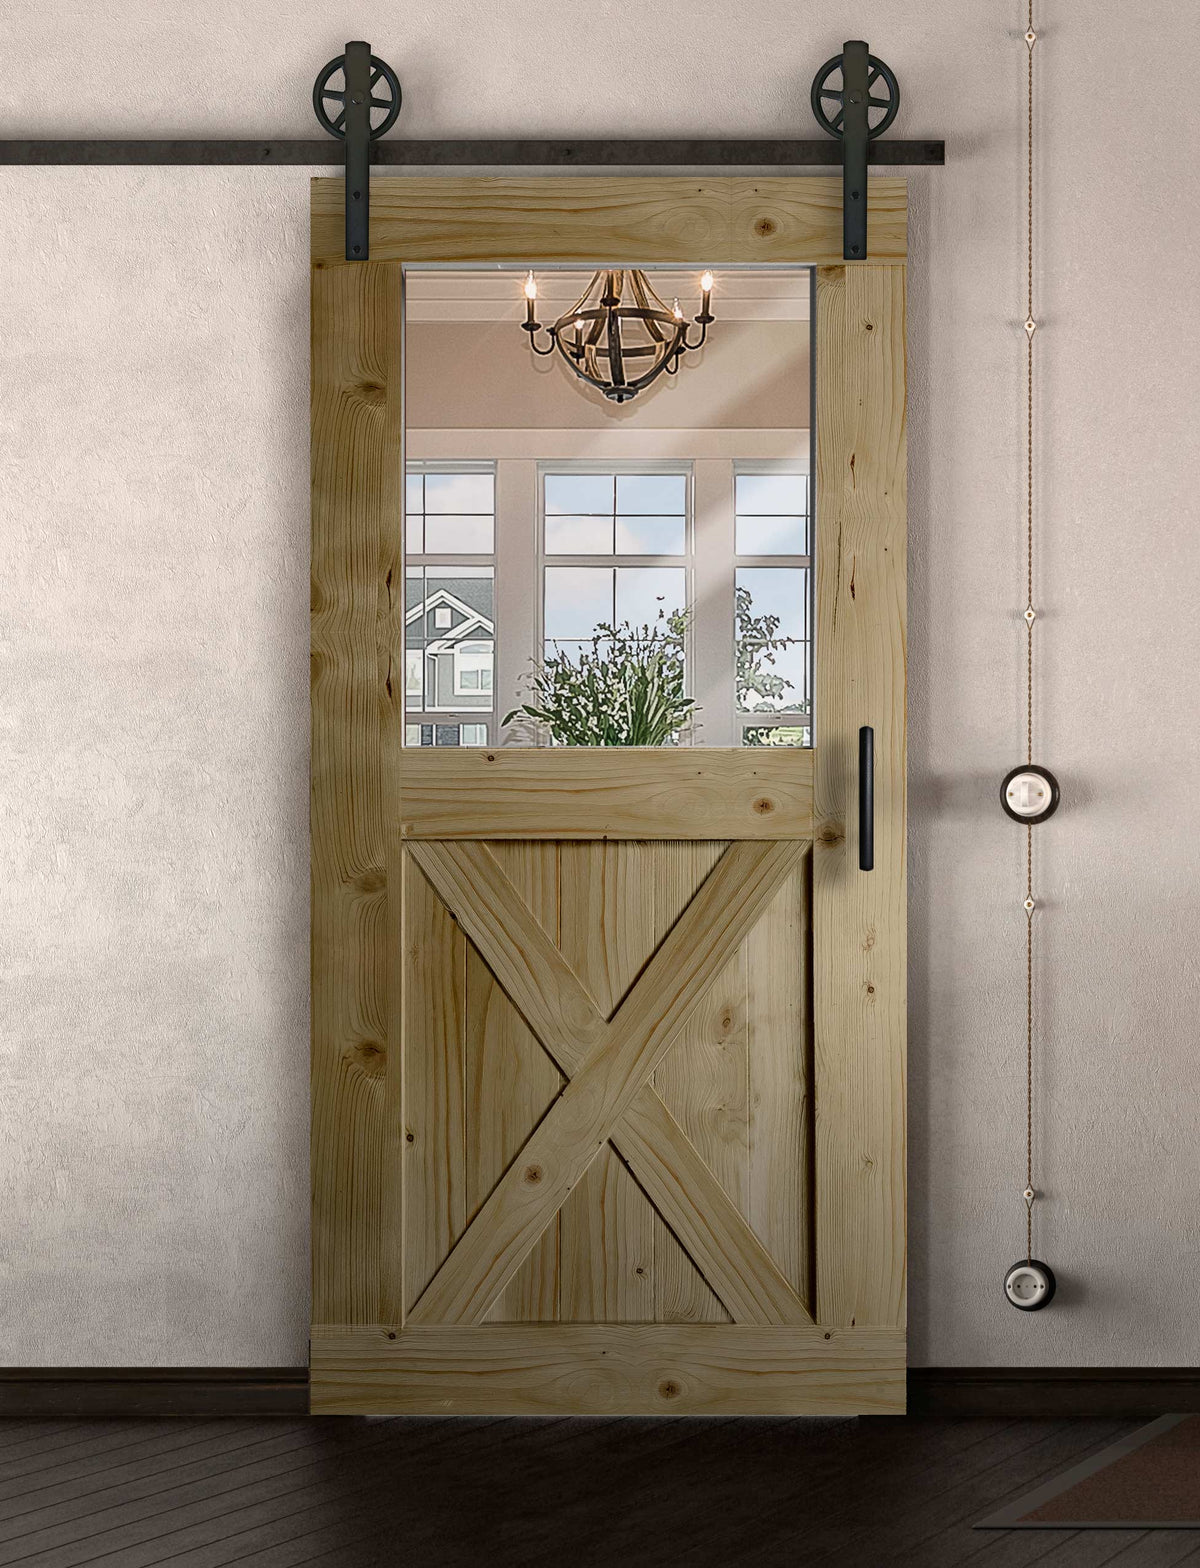 Schiebetür in Scheunentor Optik Modell Window X - Farmhouse Barn Door rustikal nach links öffnend / Muster nur Vorderseite / natur geölt